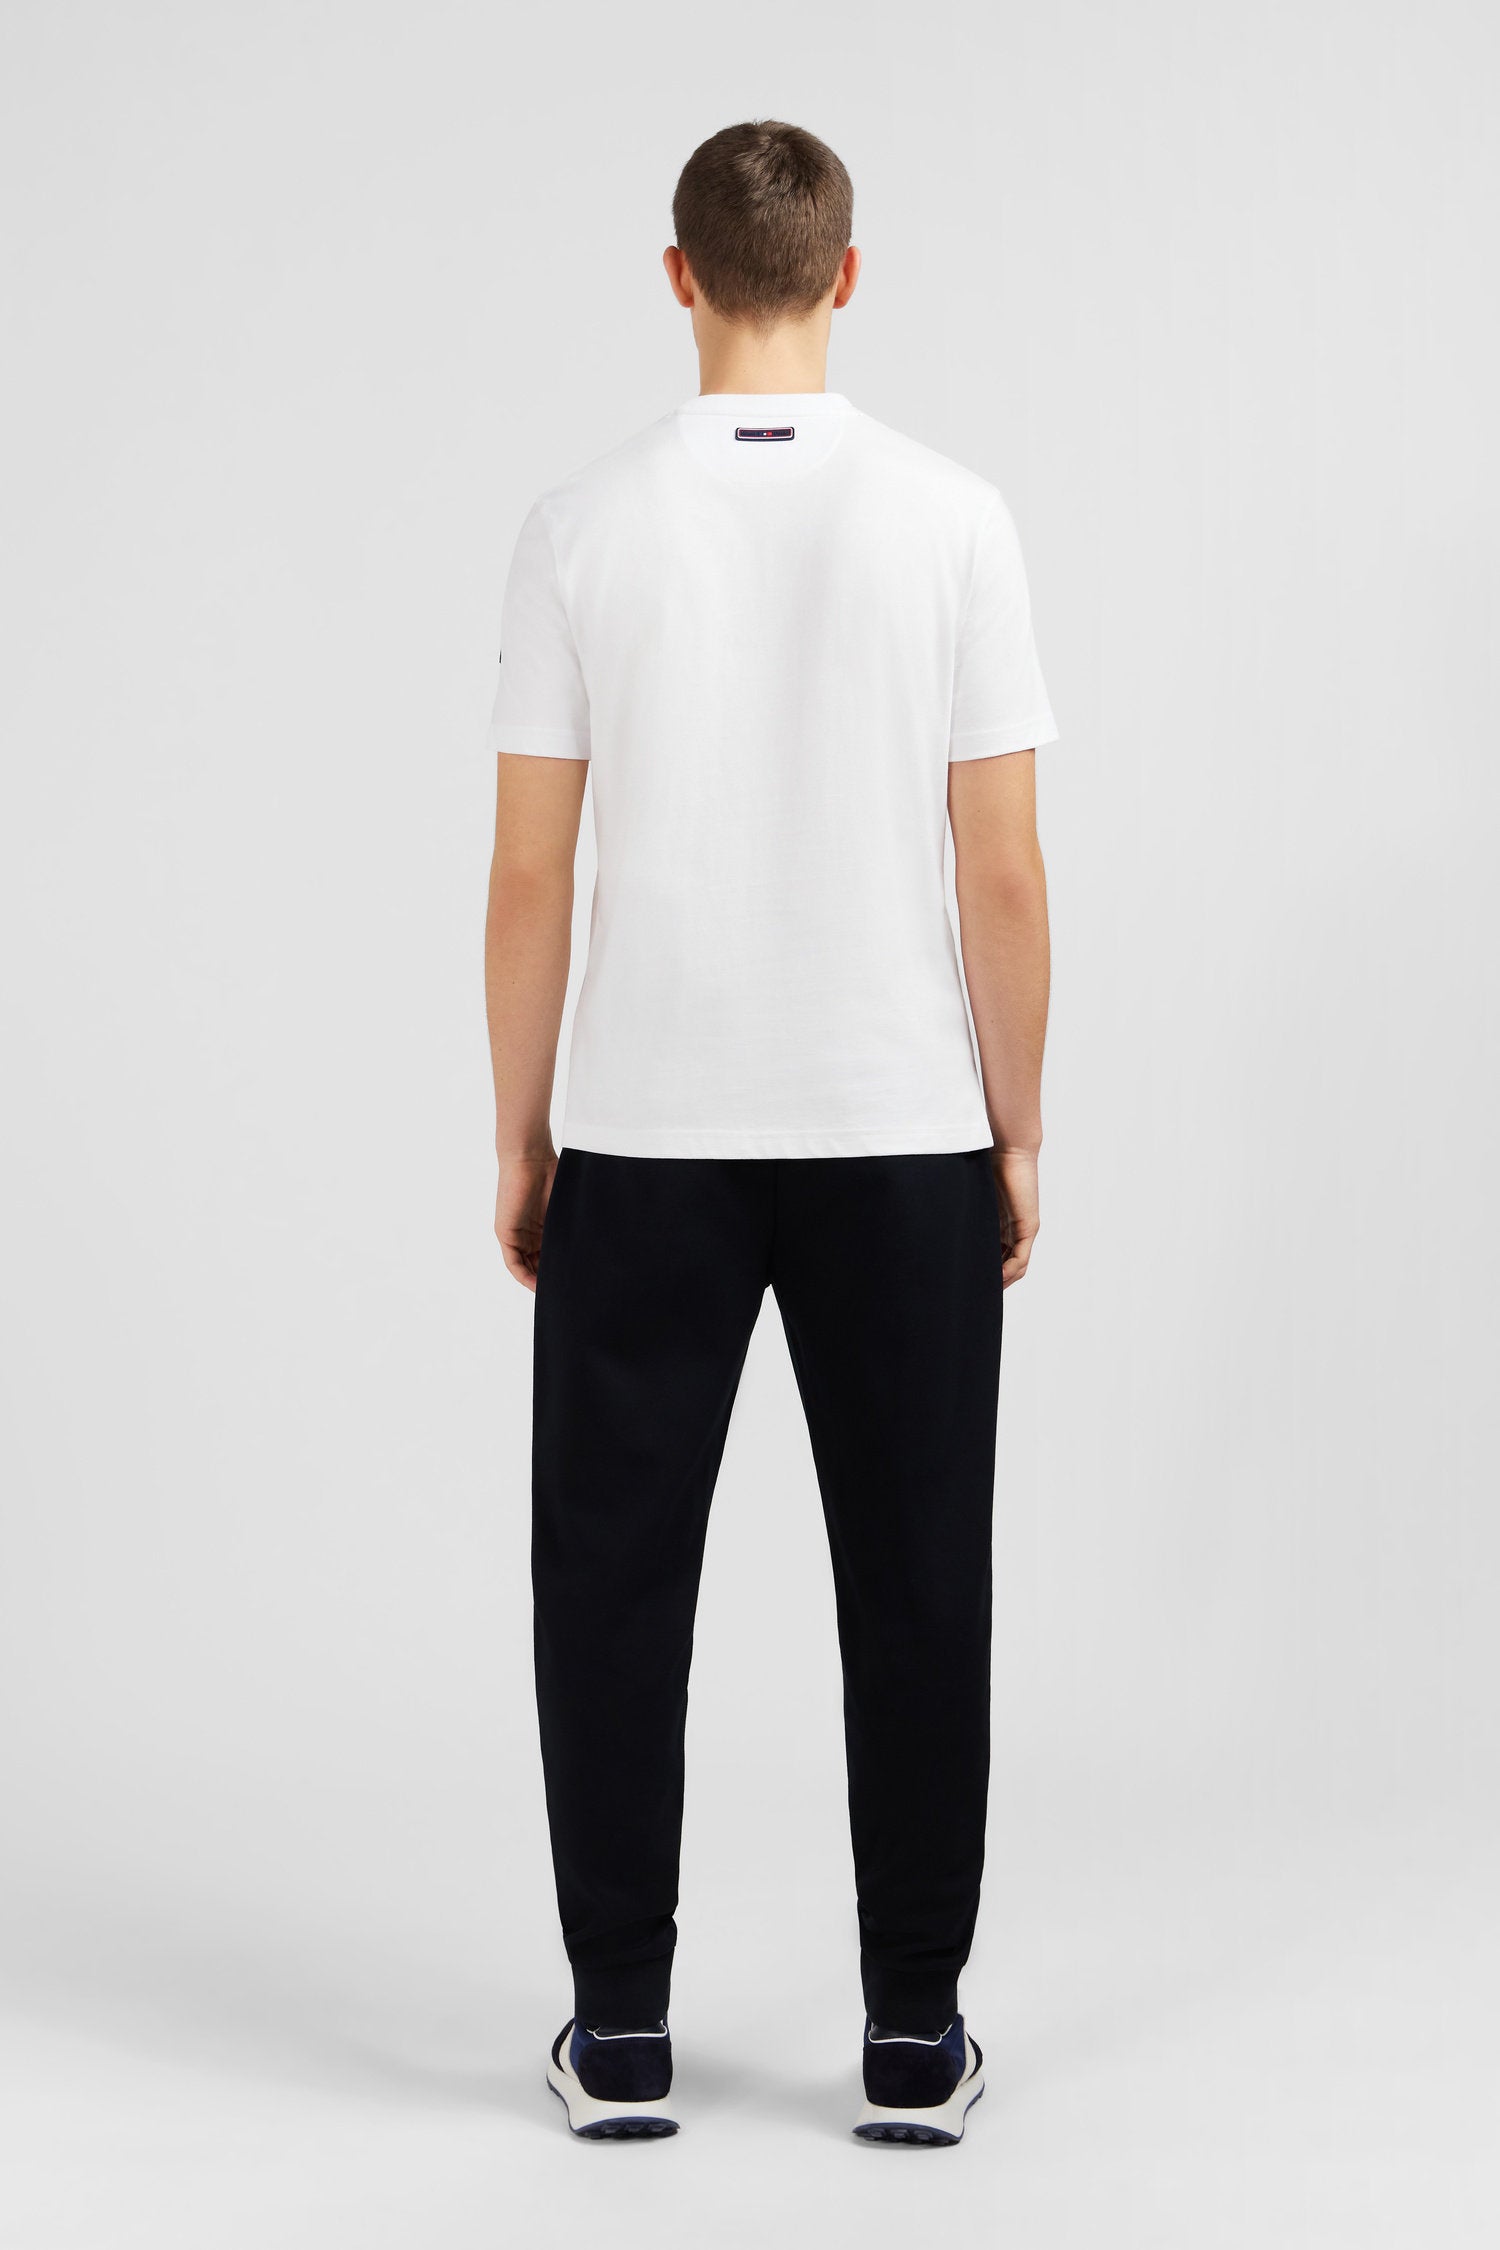 White Short-Sleeved T-Shirt_E24MAITC0037_BC_03